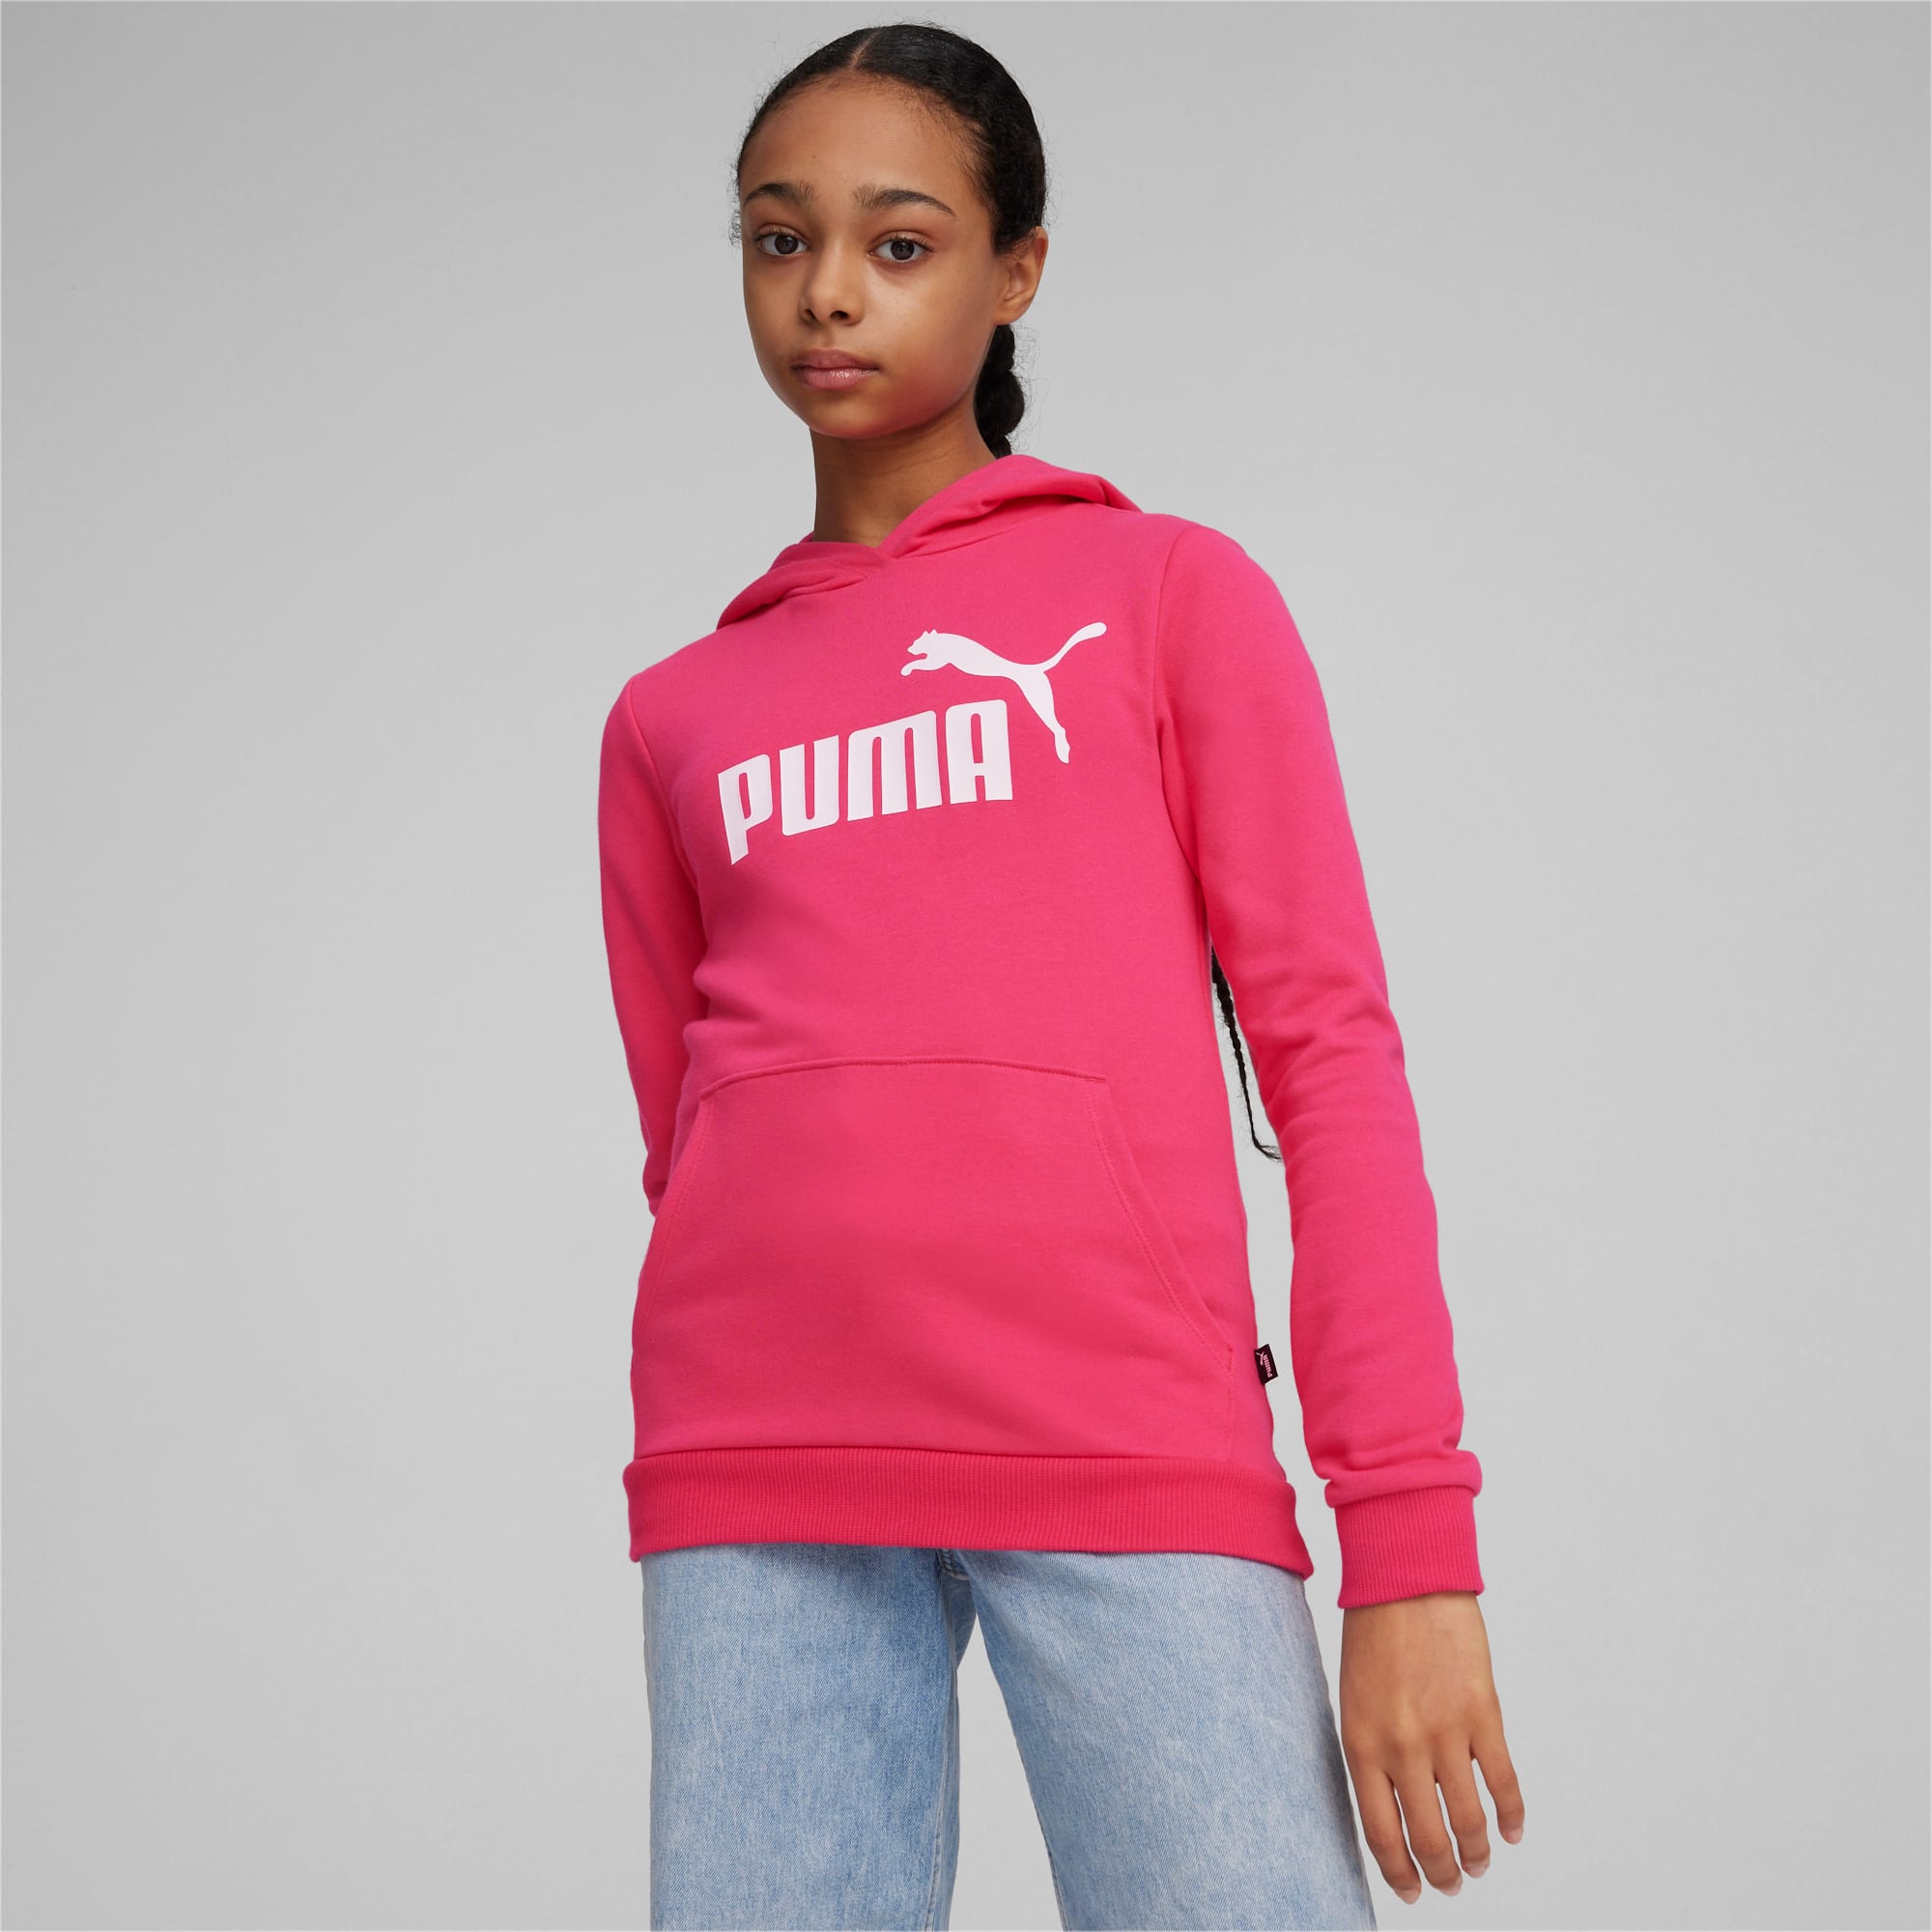 PUMA Essentials Logo Youth Hoodie, Garnet Rose, Size 7-8Y, Clothing